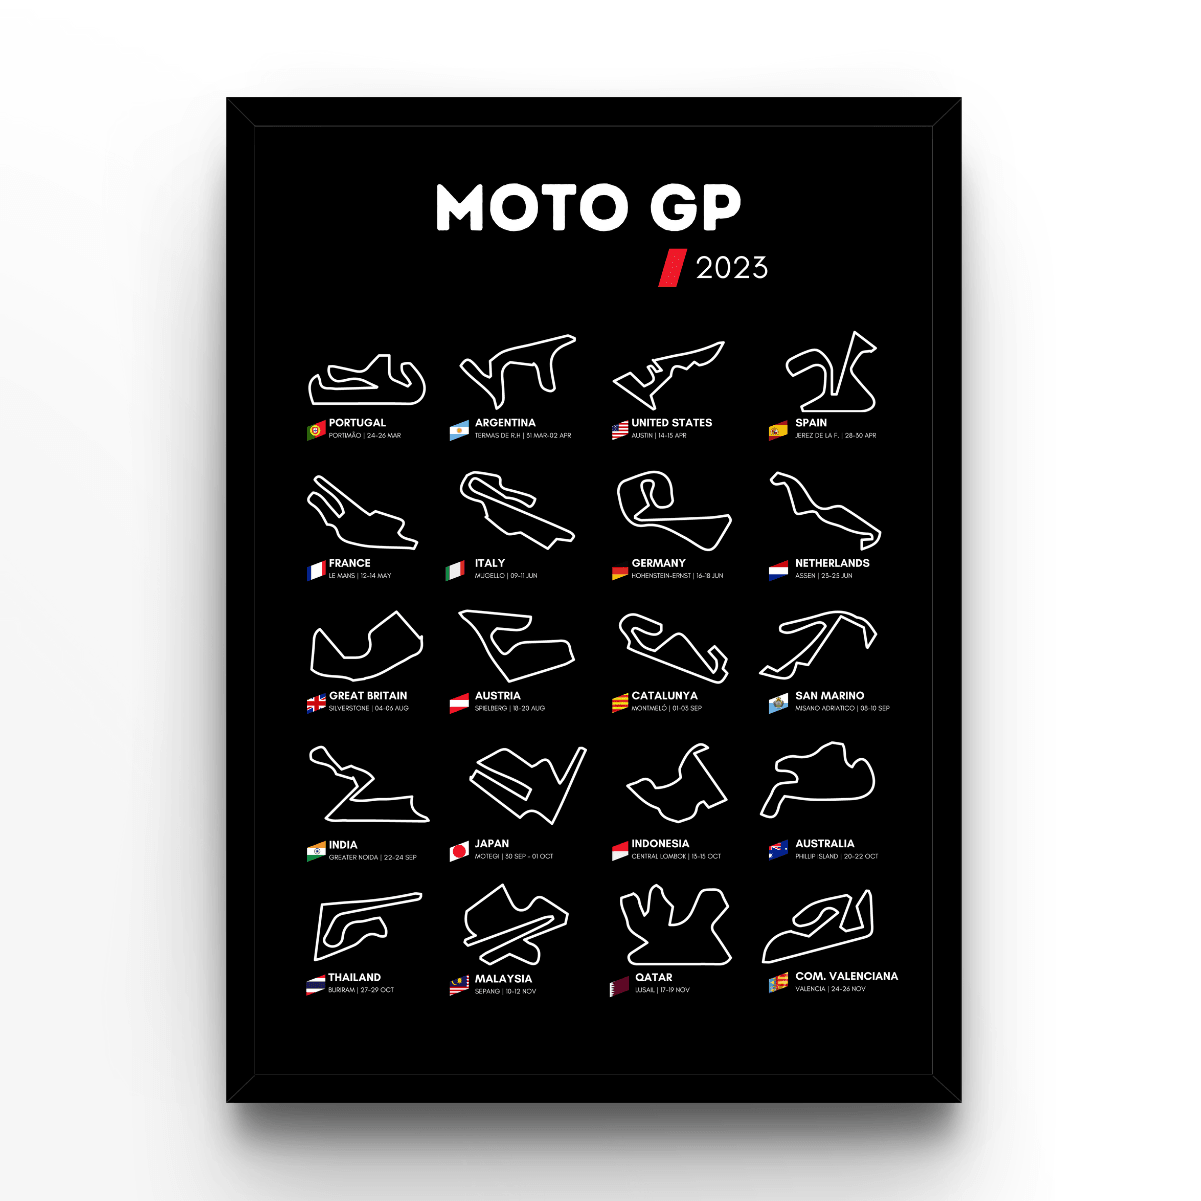 Circuit Wall Moto GP 2023 Black - A4, A3, A2 Posters Base - Poster Print Shop / Art Prints / PostersBase